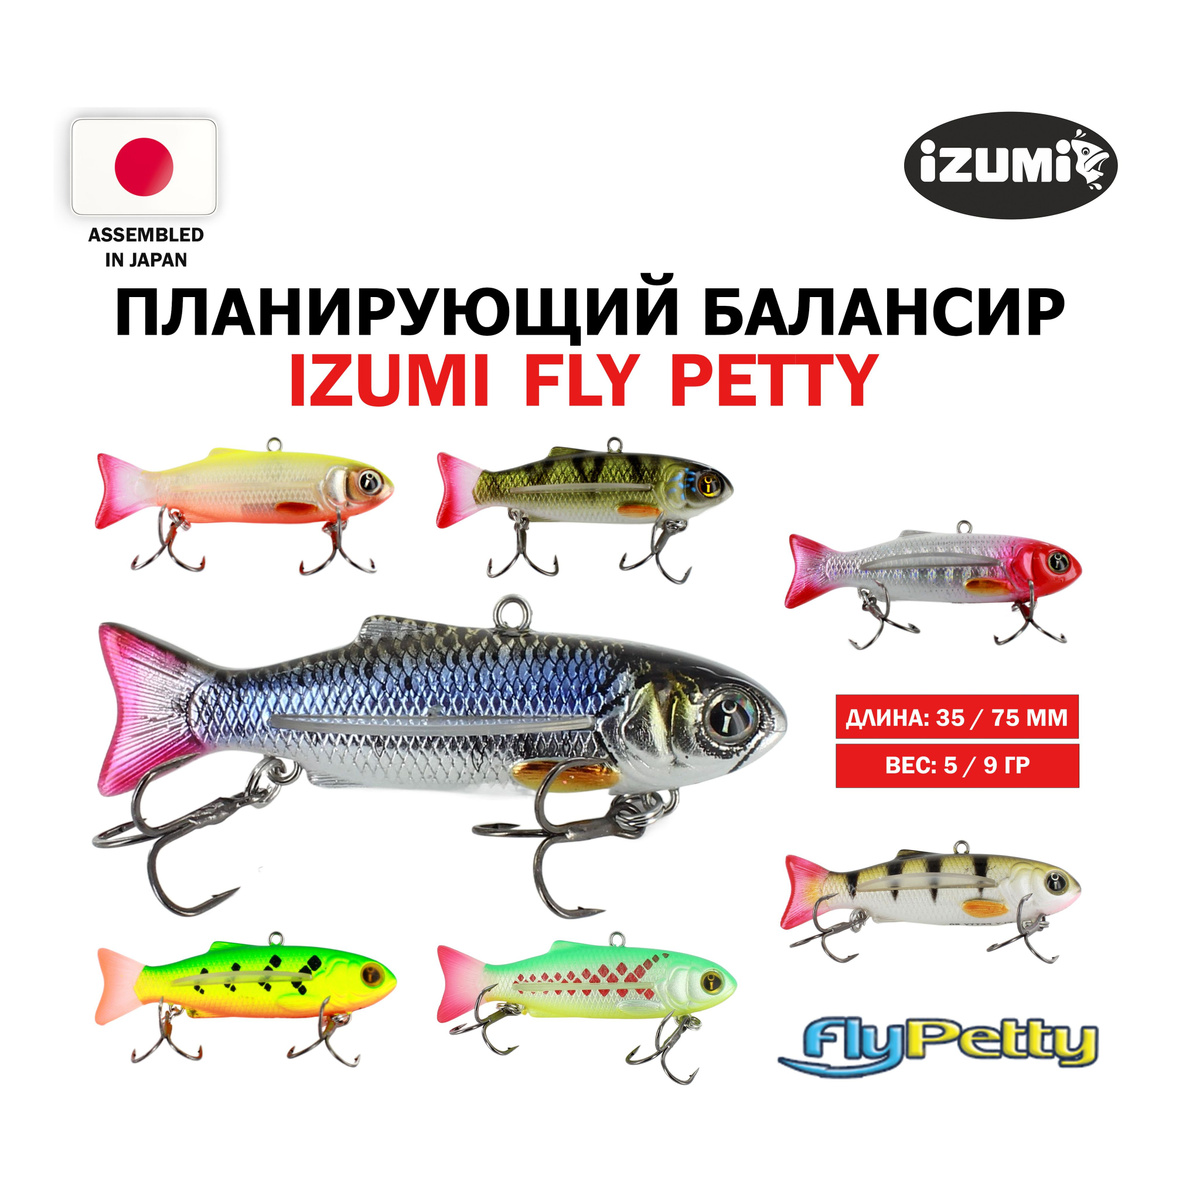 https://www.ozon.ru/https://www.ozon.ru/product/tonushchiy-vobler-izumi-fly-petty-55-919468994//planiruyushchiy-balansir-izumi-fly-roach-88-1043937051/